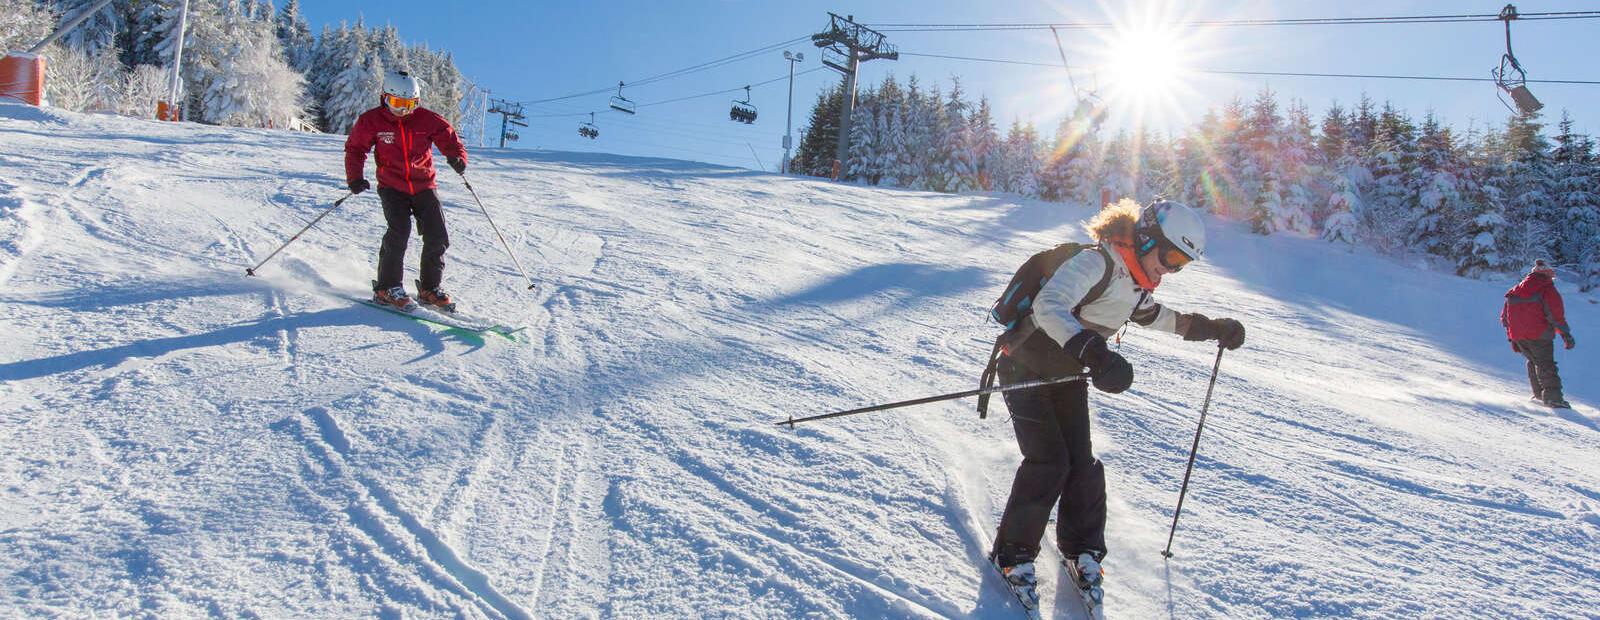 ski-alpin-station-lac-blanc-vosges-télésiège-piste-famille